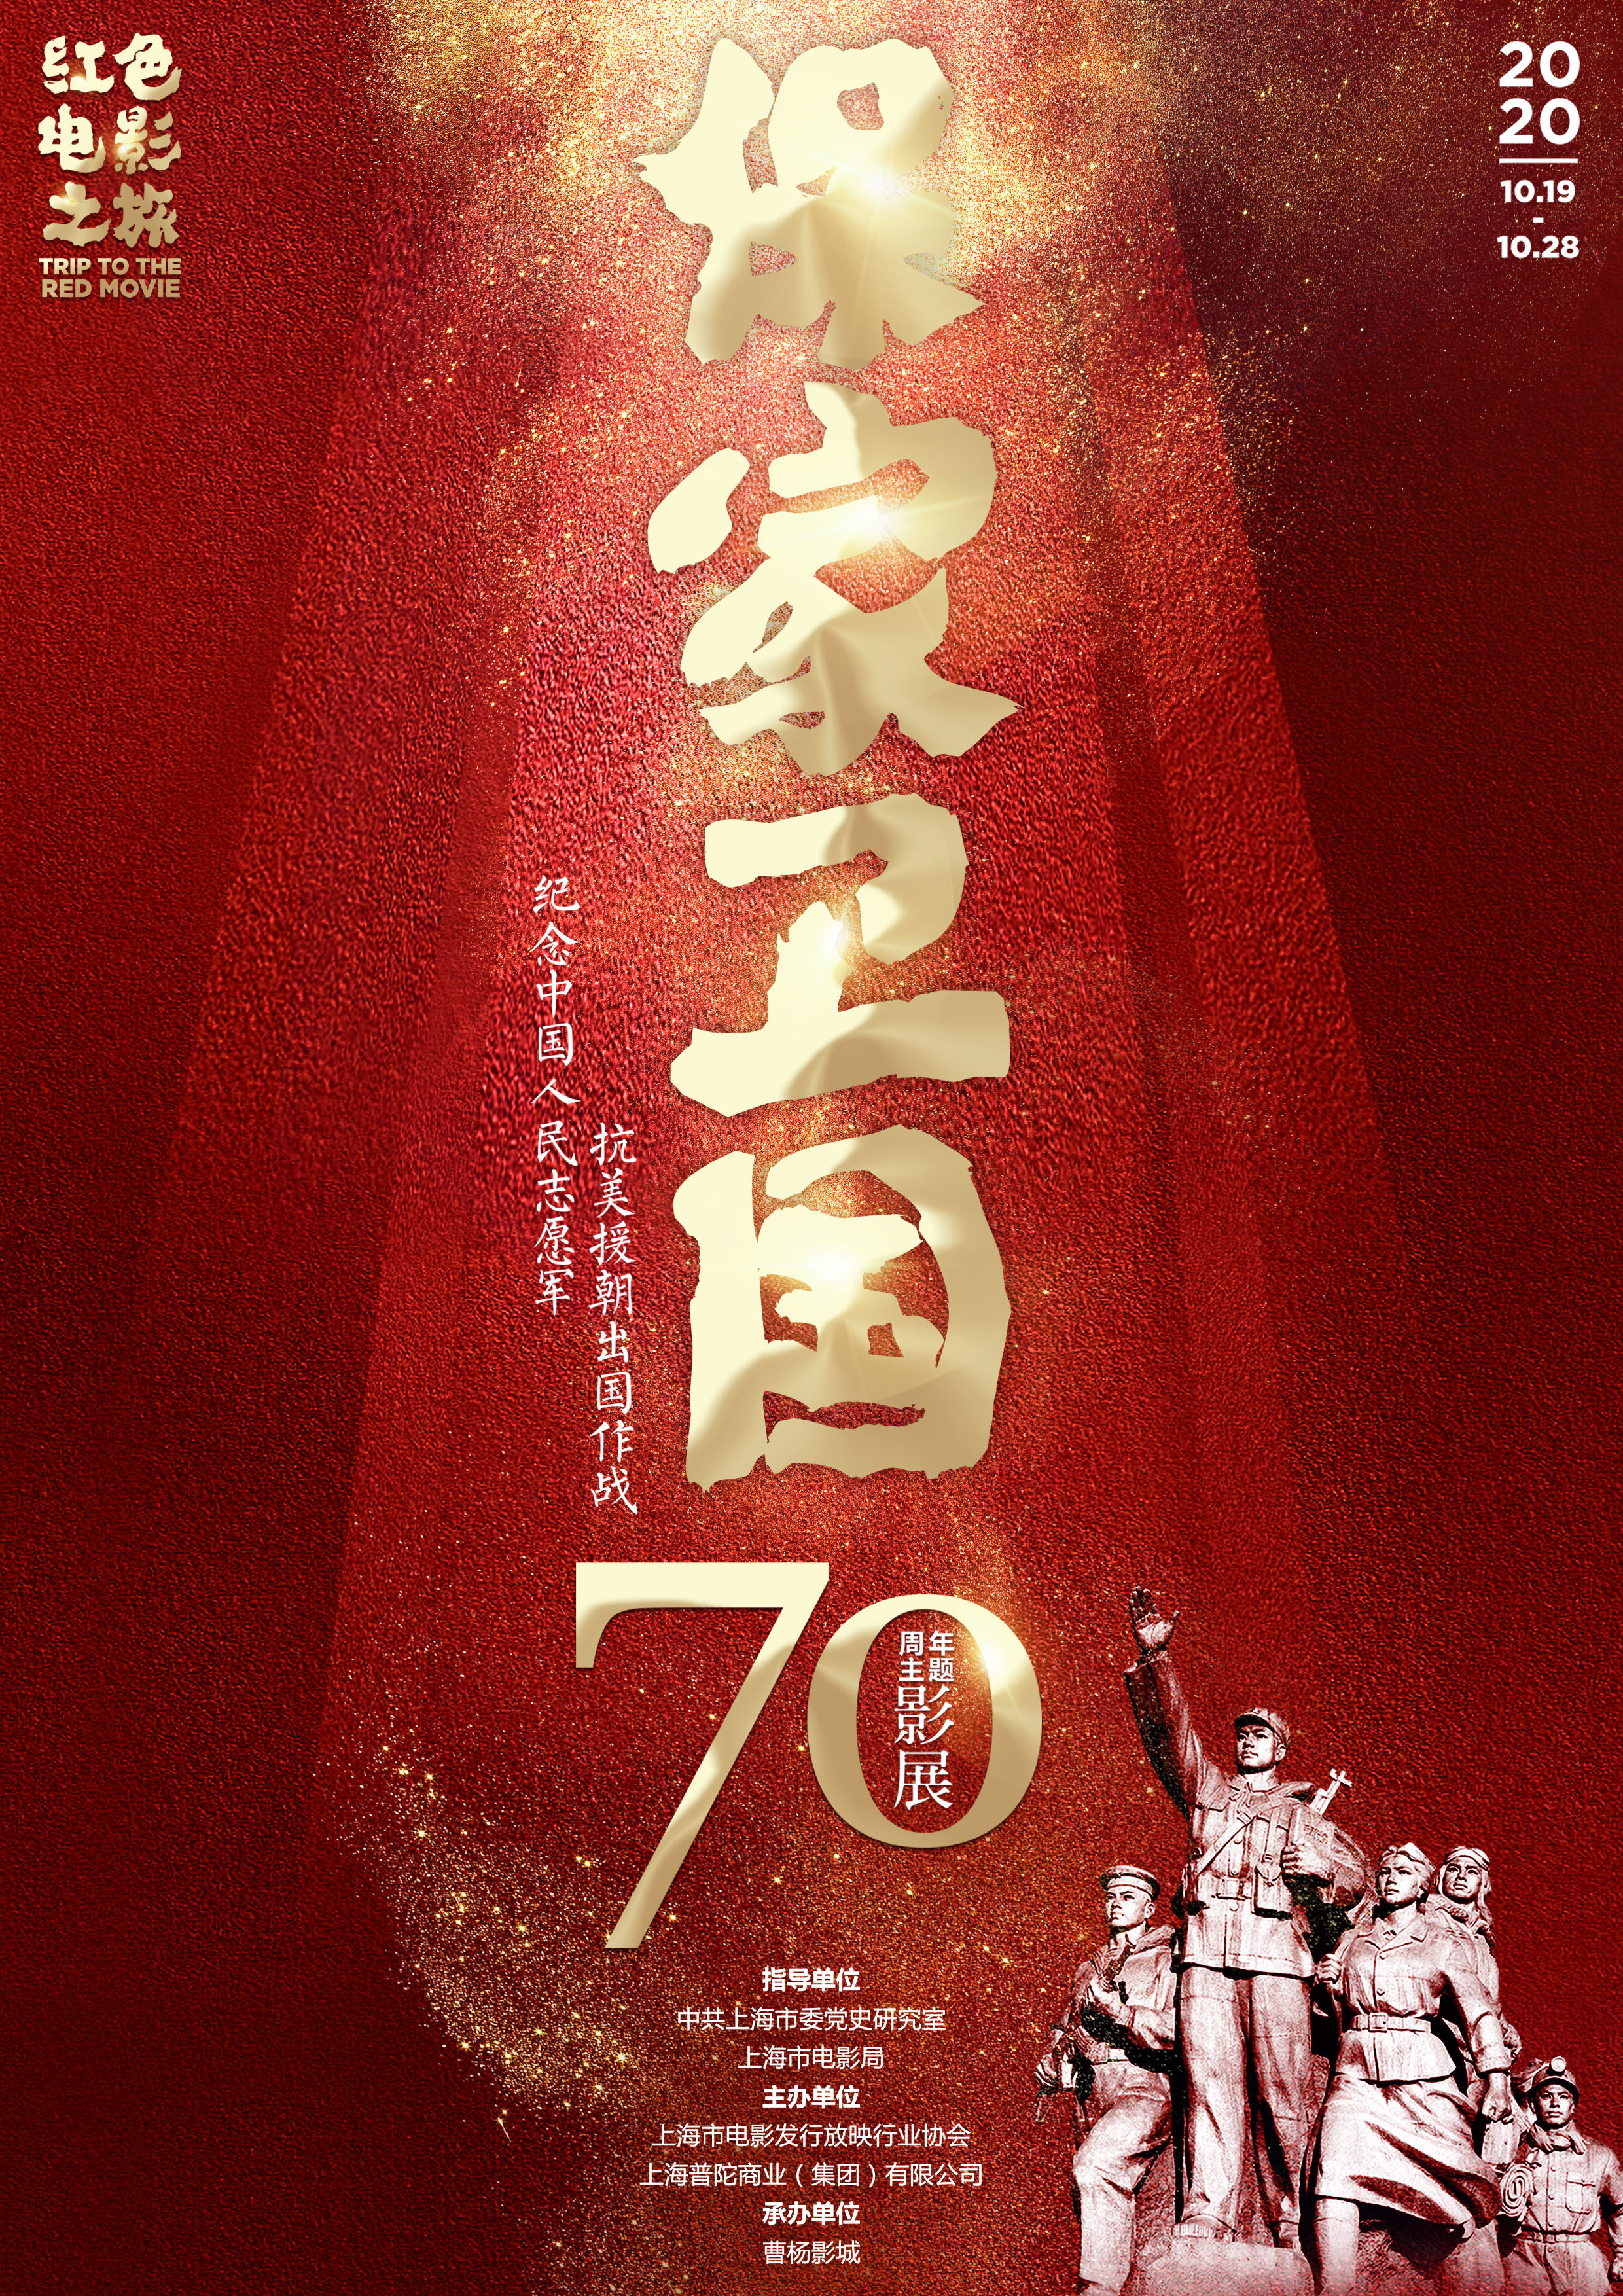 "红色电影之旅——保家卫国:纪念中国人民志愿军抗美援朝出国作战70